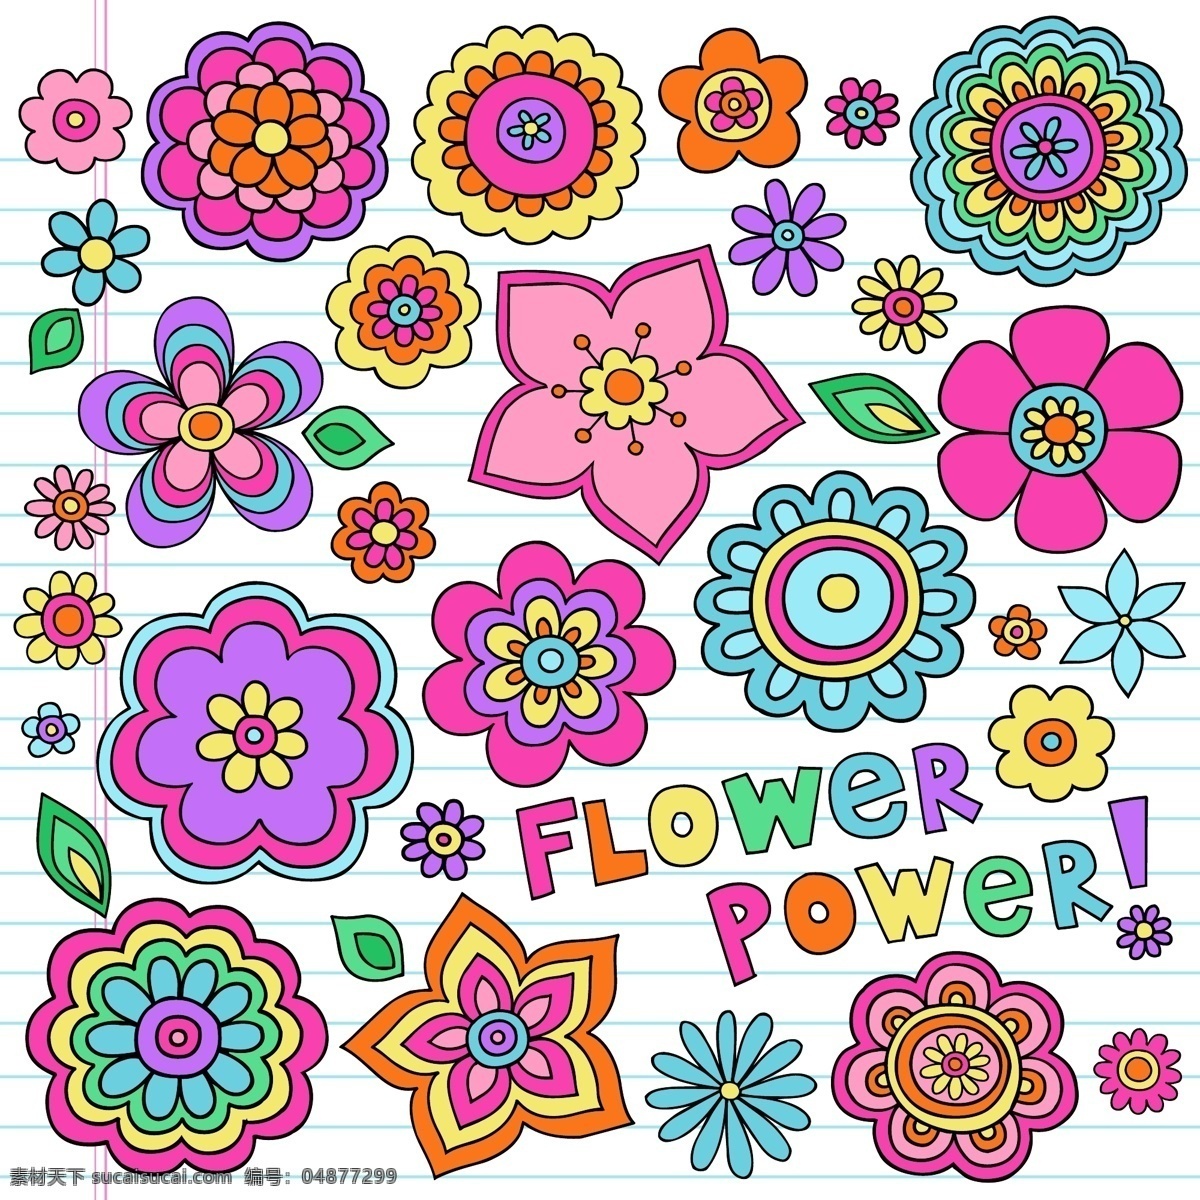 可爱 儿童画 花朵 彩色 卡通 植物